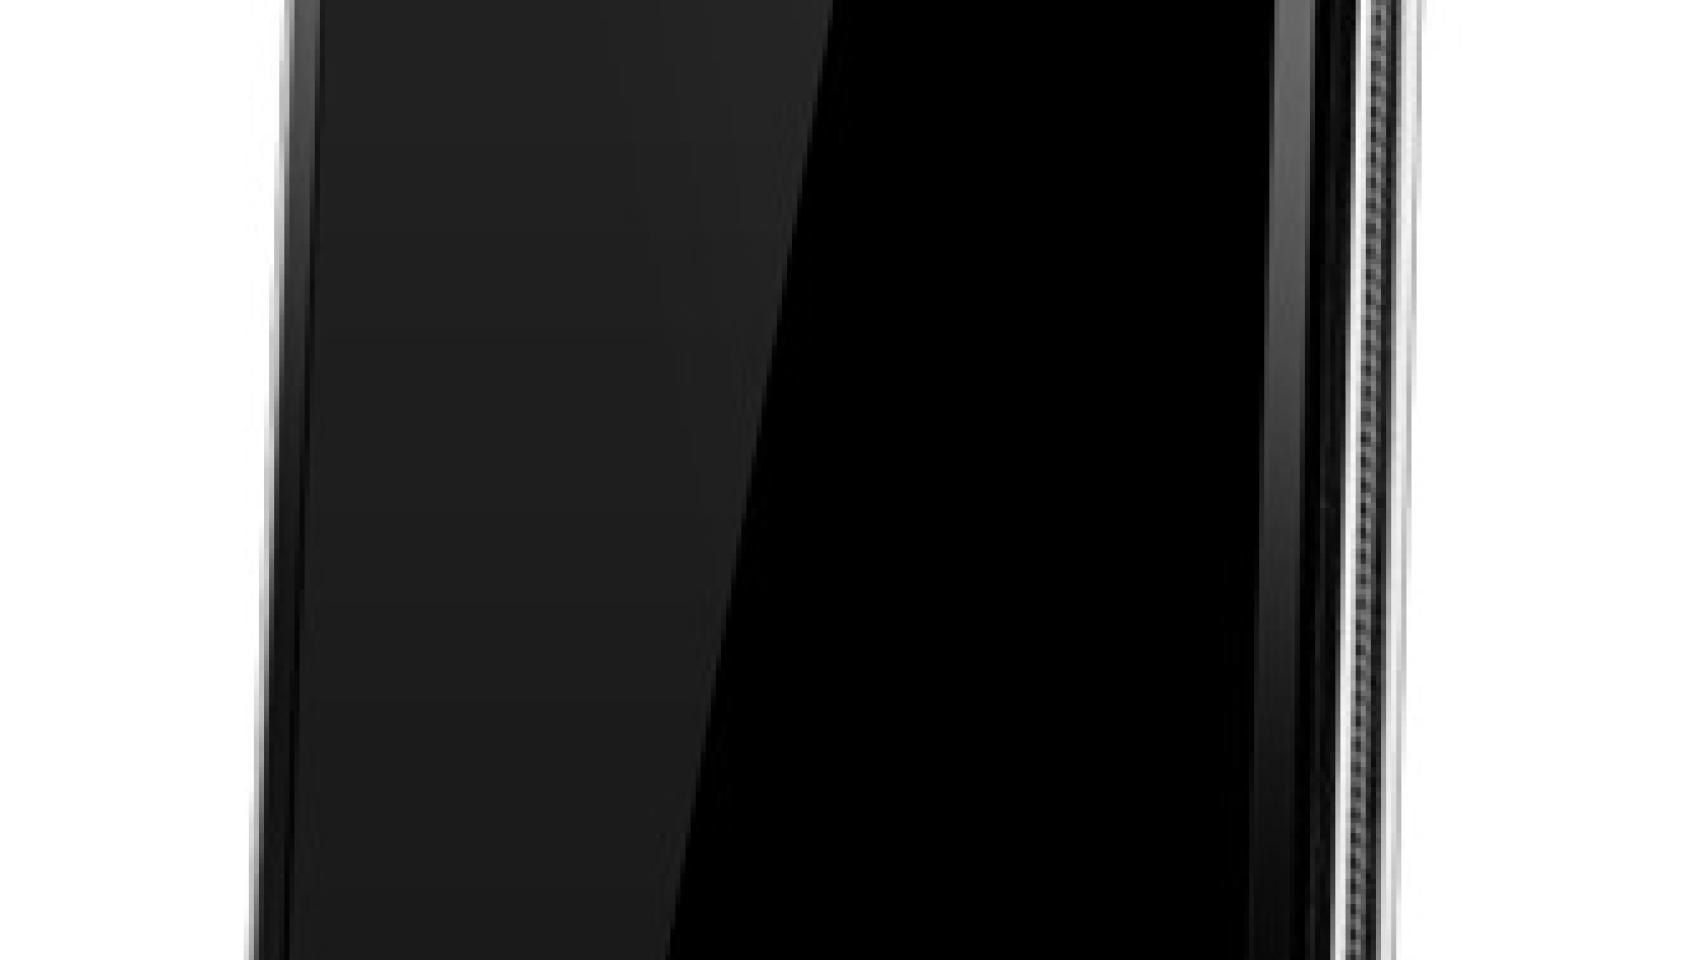 Cuatro núcleos para el nuevo LG X3 recién filtrado